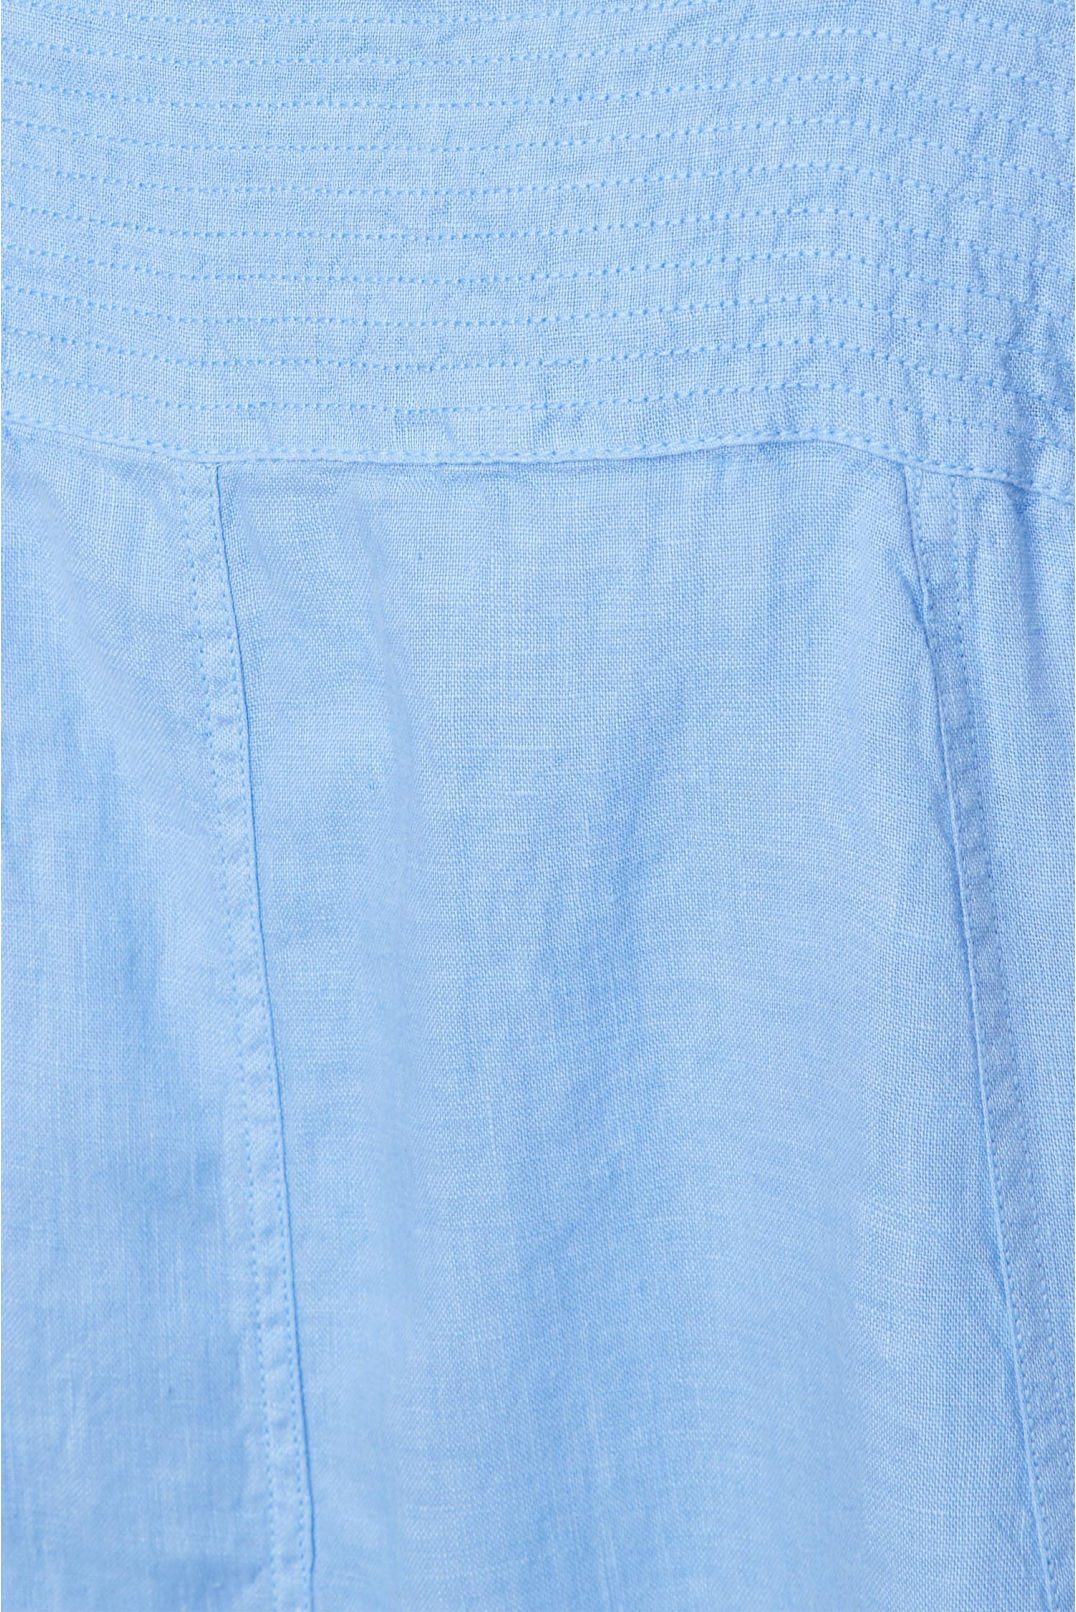 Жіночий блакитний лляний сарафан - 4